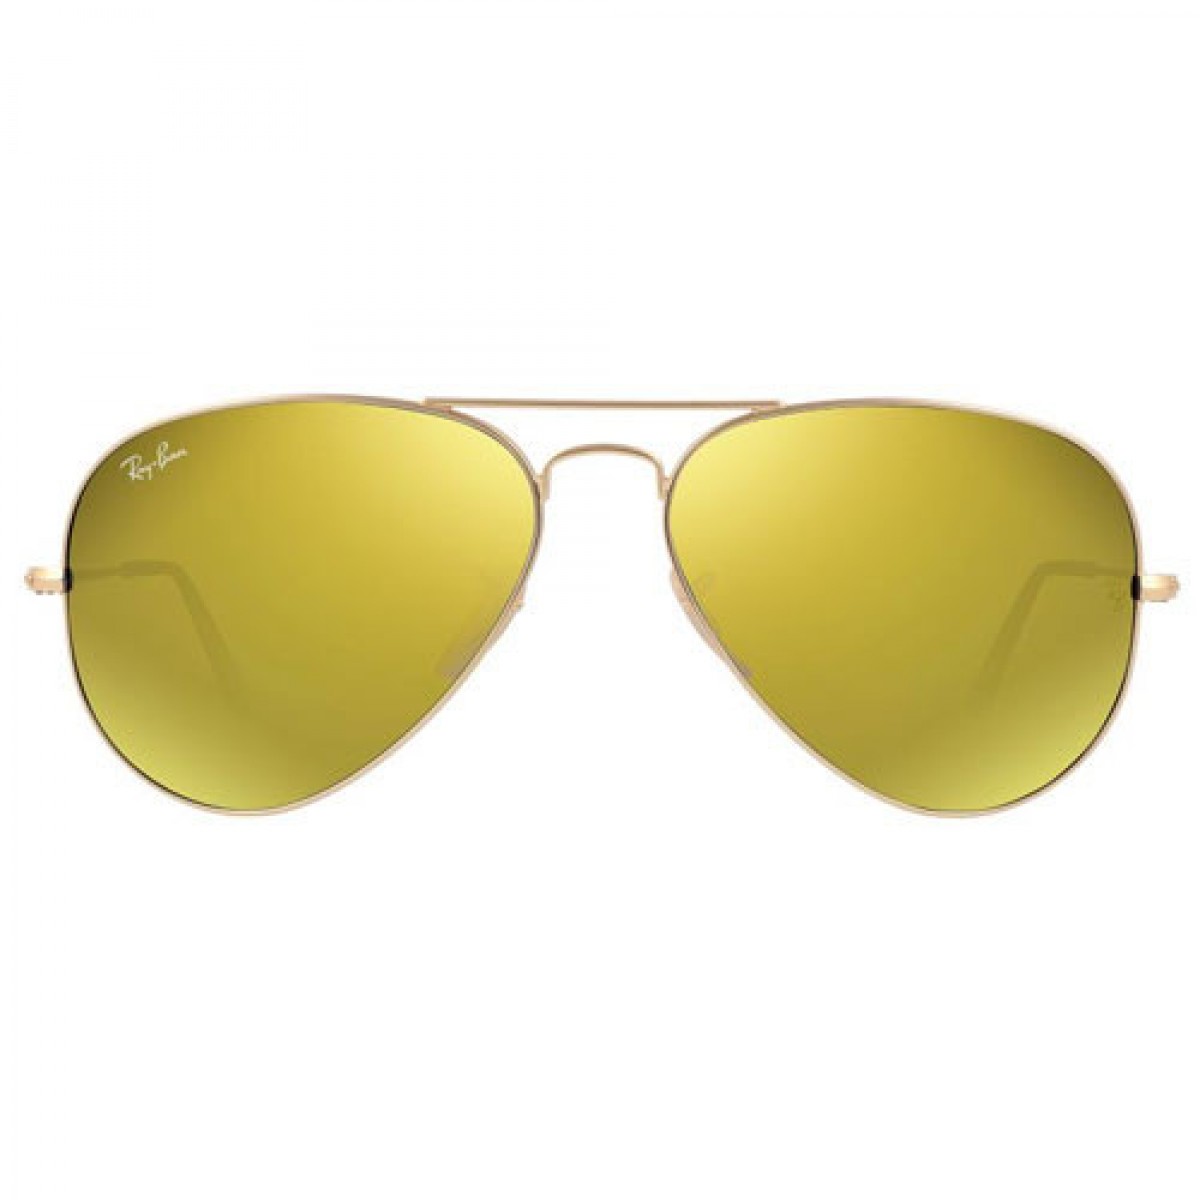 Ray-ban Original Aviator Yellow Flash Sunglasses RB3025 112/93 58-14 xách  tay chính hãng giá rẻ bảo hành dài - Kính nữ - Senmix